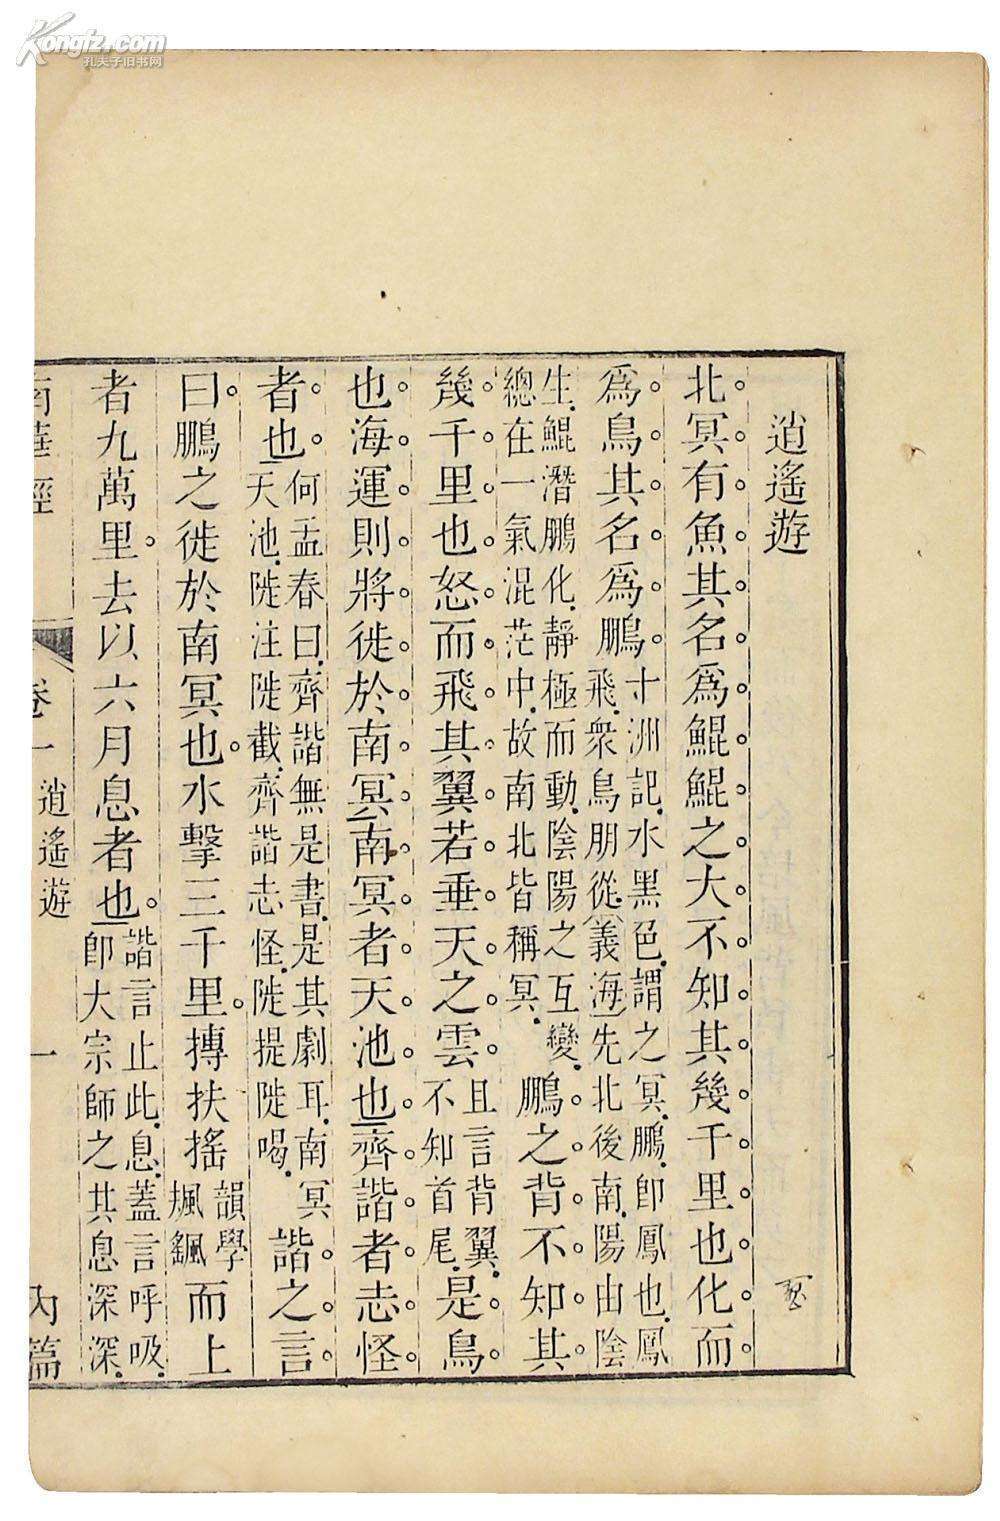 老祖宗智慧结晶,中国人必读的17本书之四——《庄子》